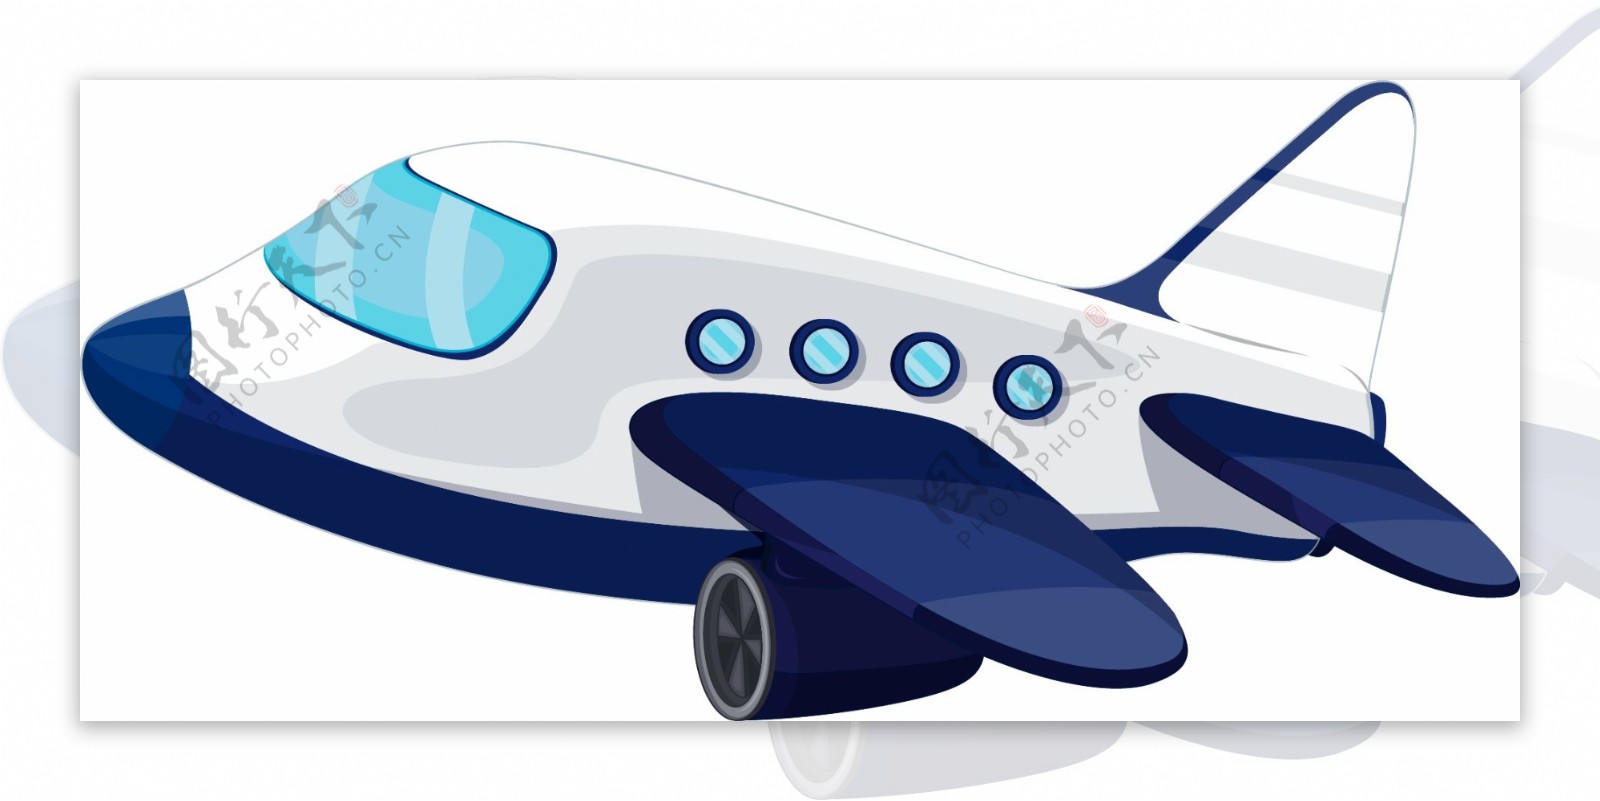 卡通矢量可爱飞机商业装饰图案创意设计元素